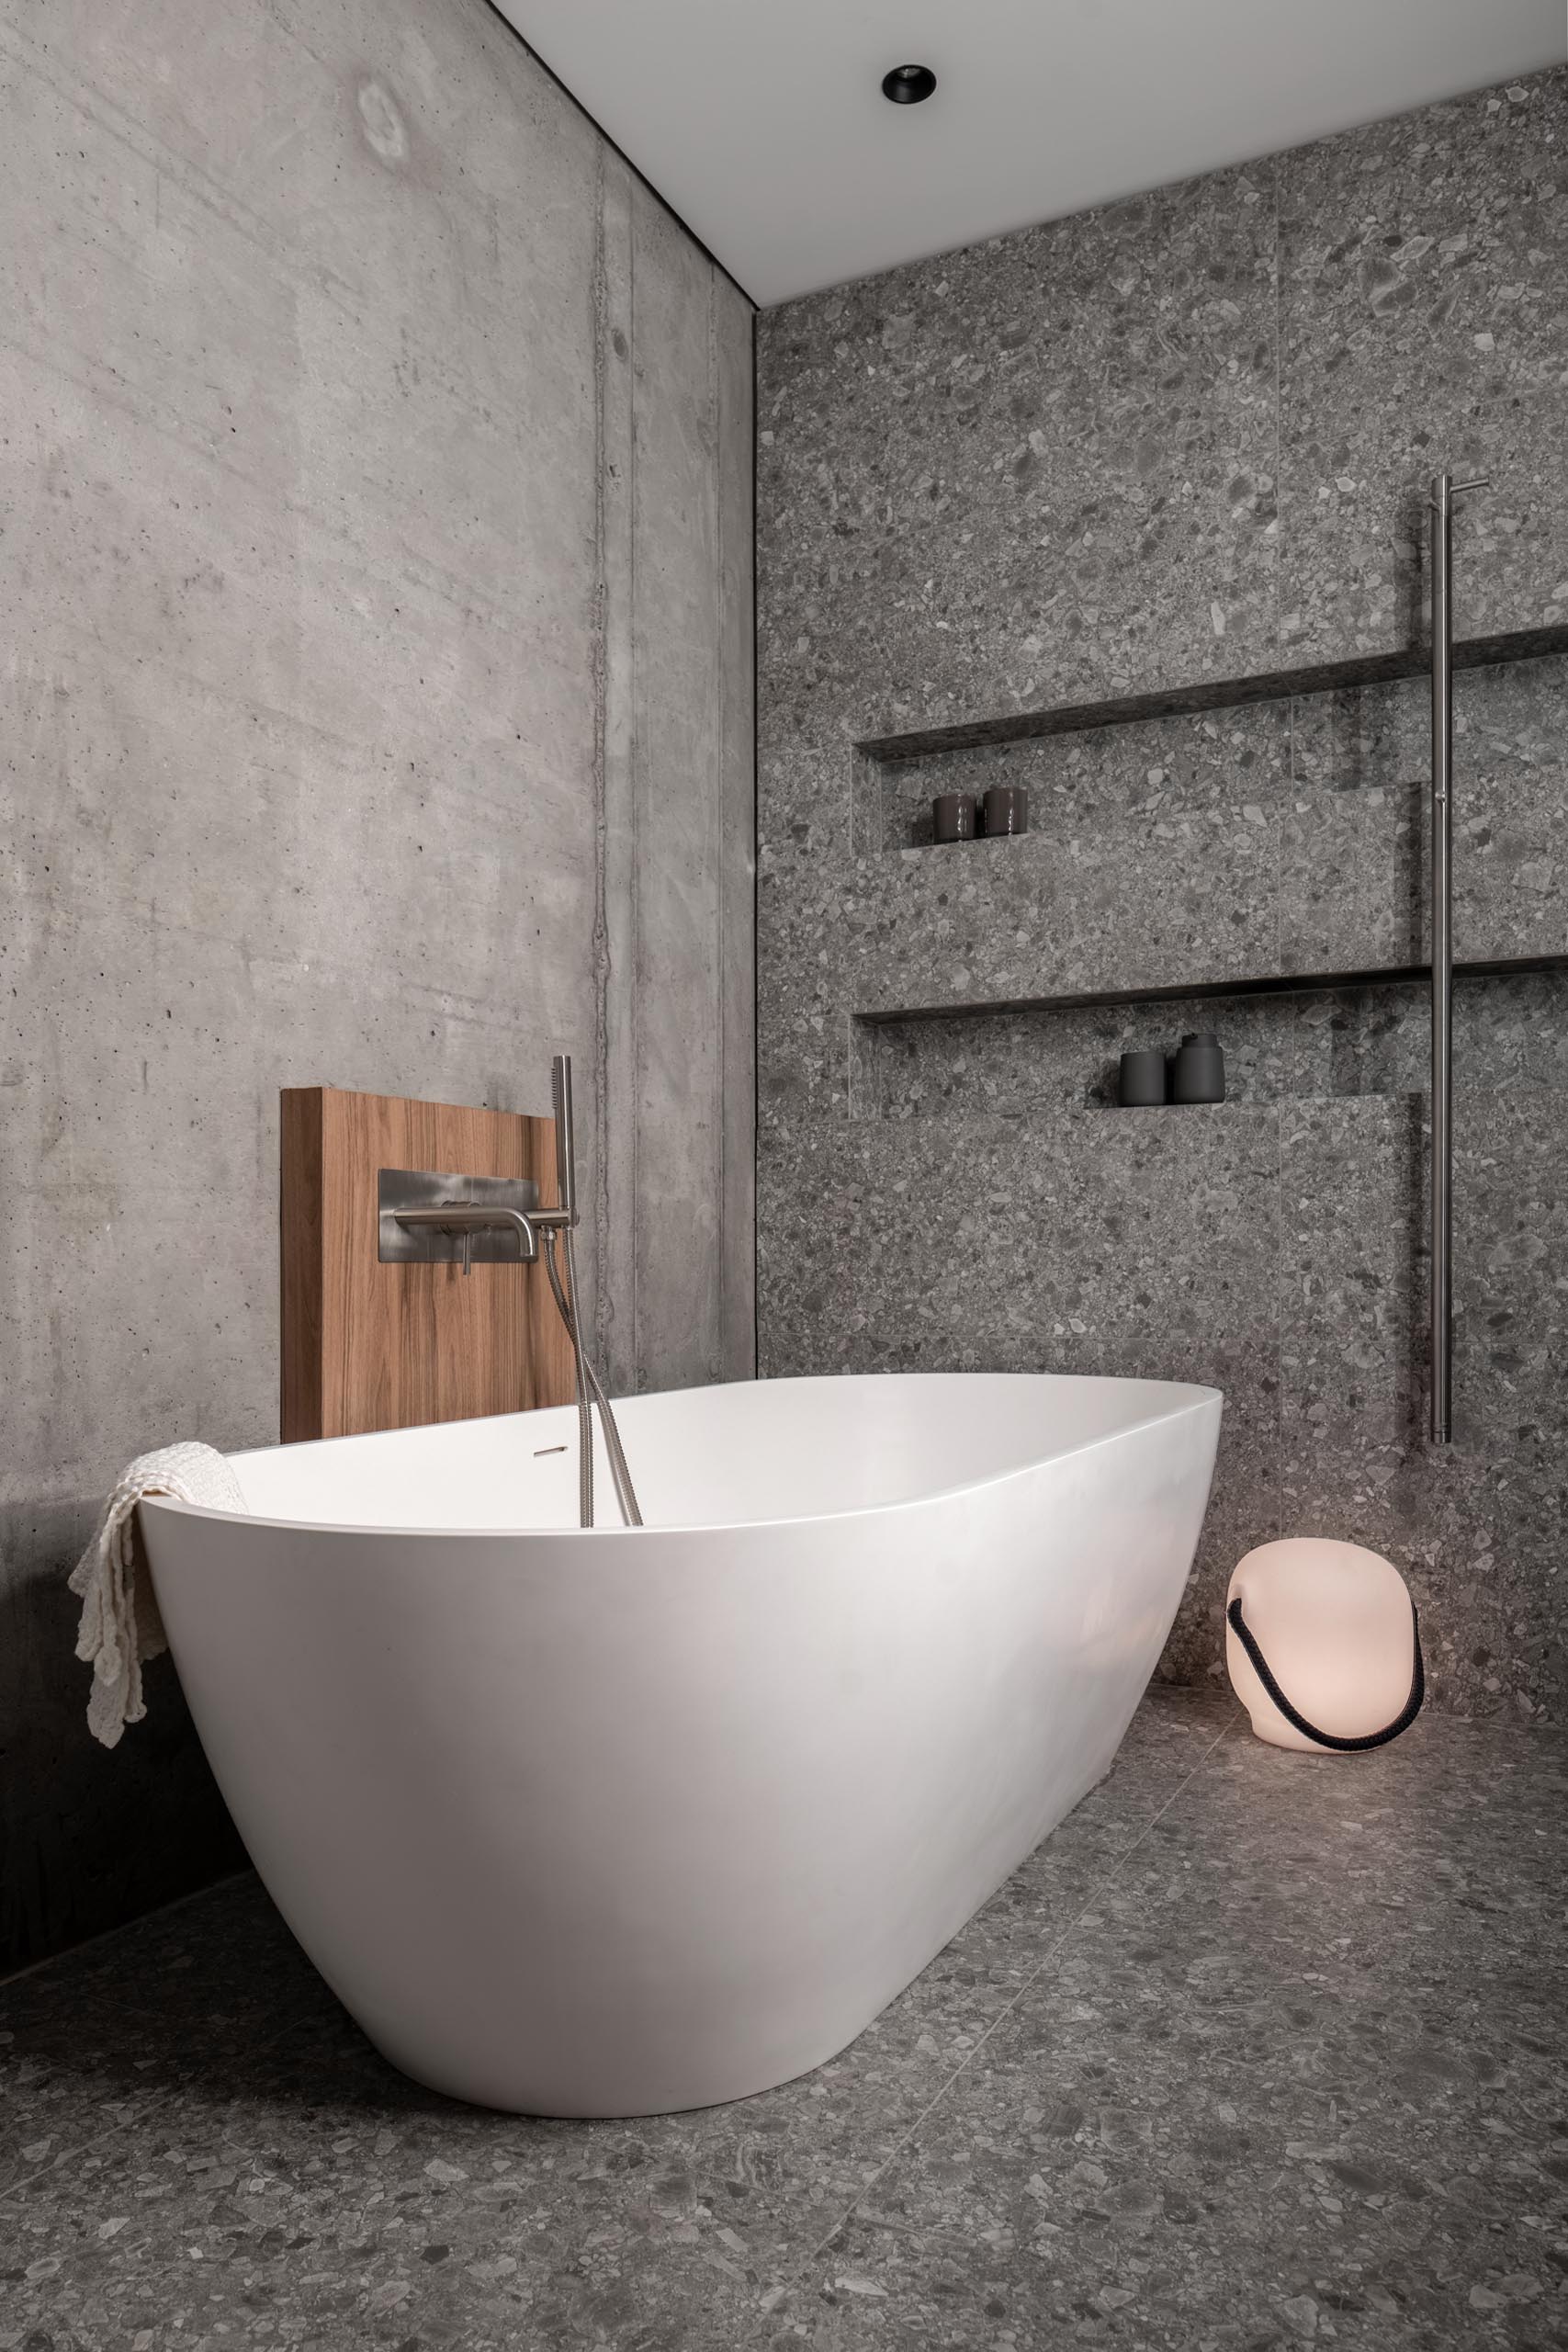 Современная ванная комната с отдельно стоящей белой ванной и душем со встроенными нишами для полок.